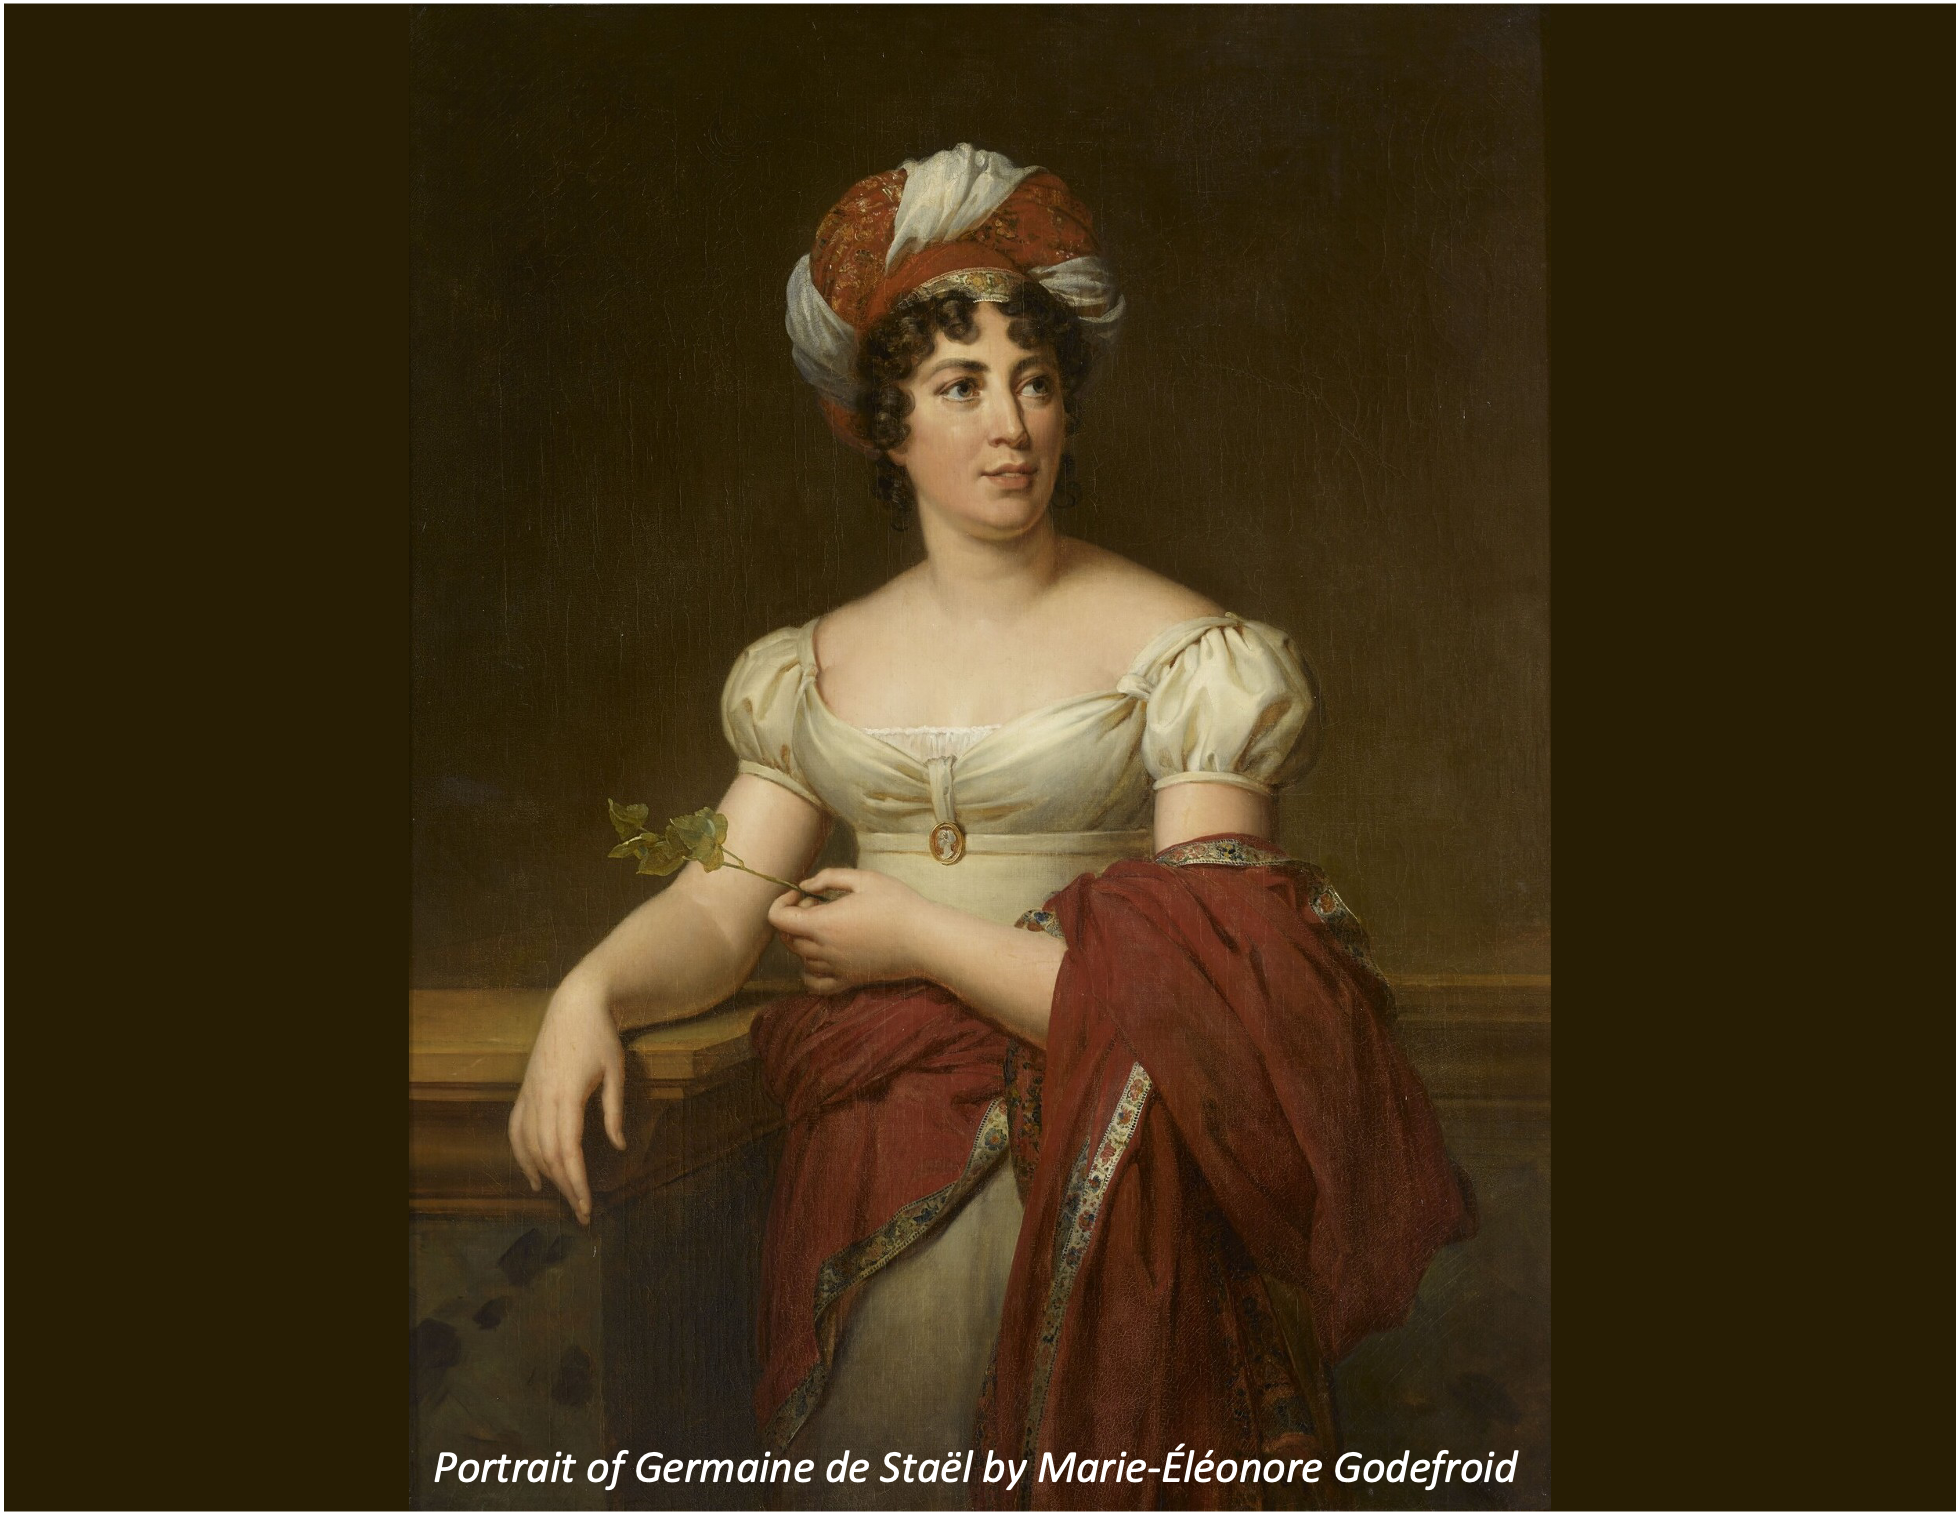 Portrait of Germaine de Staël by Marie-Éléonore Godefroid